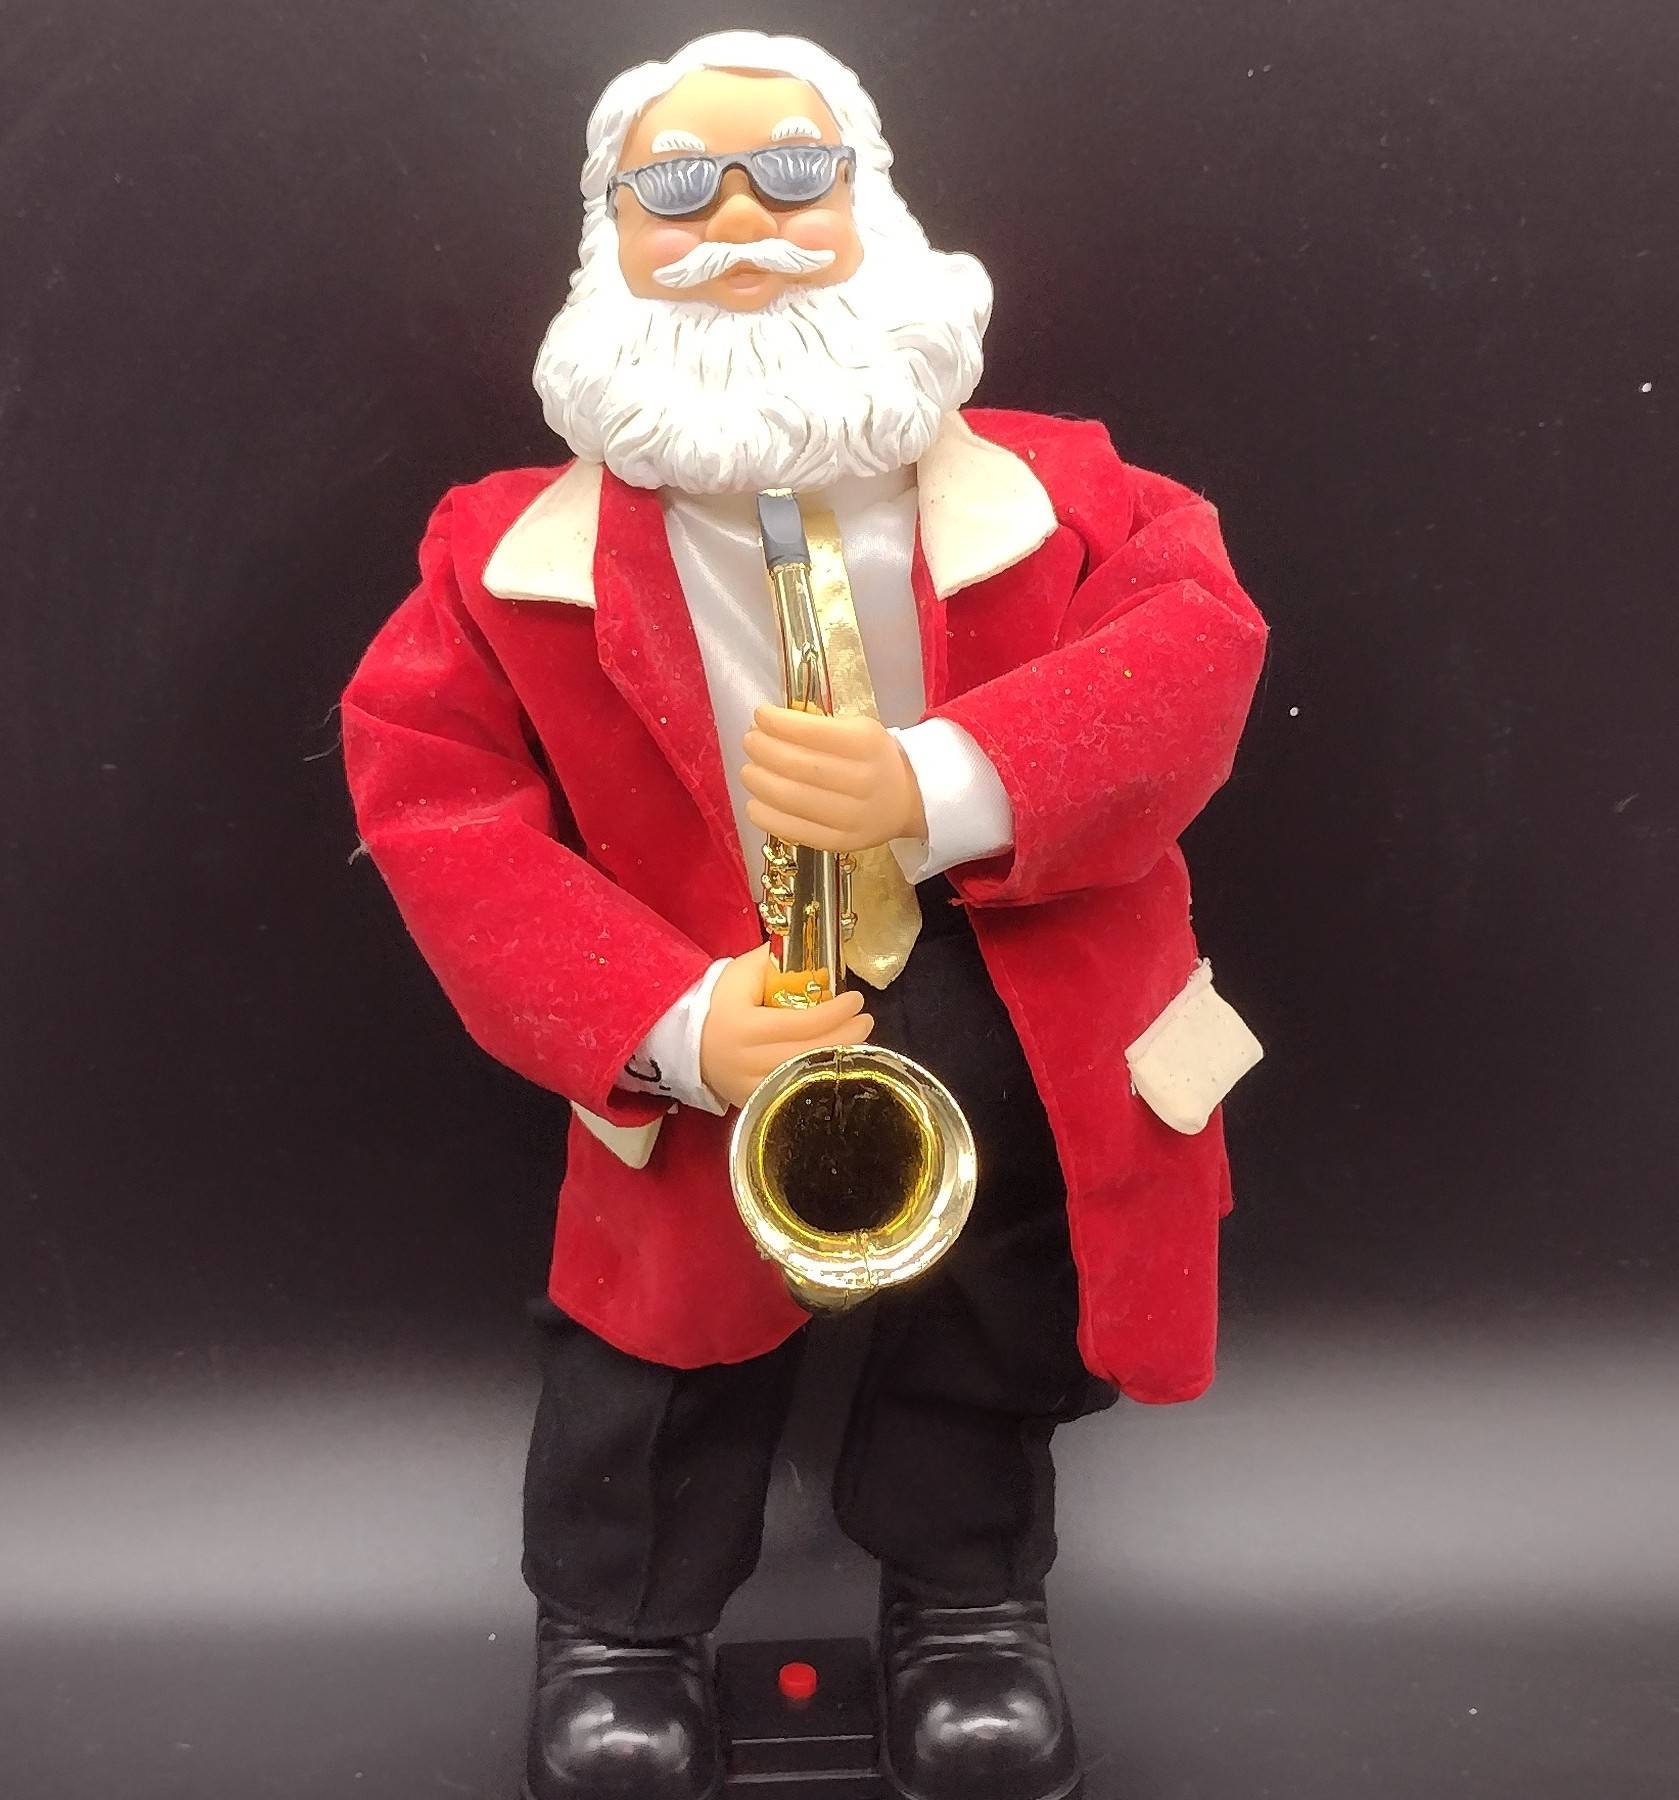 saxophone jouet 8 notes - jouet musical - idées cadeaux - bauer musique